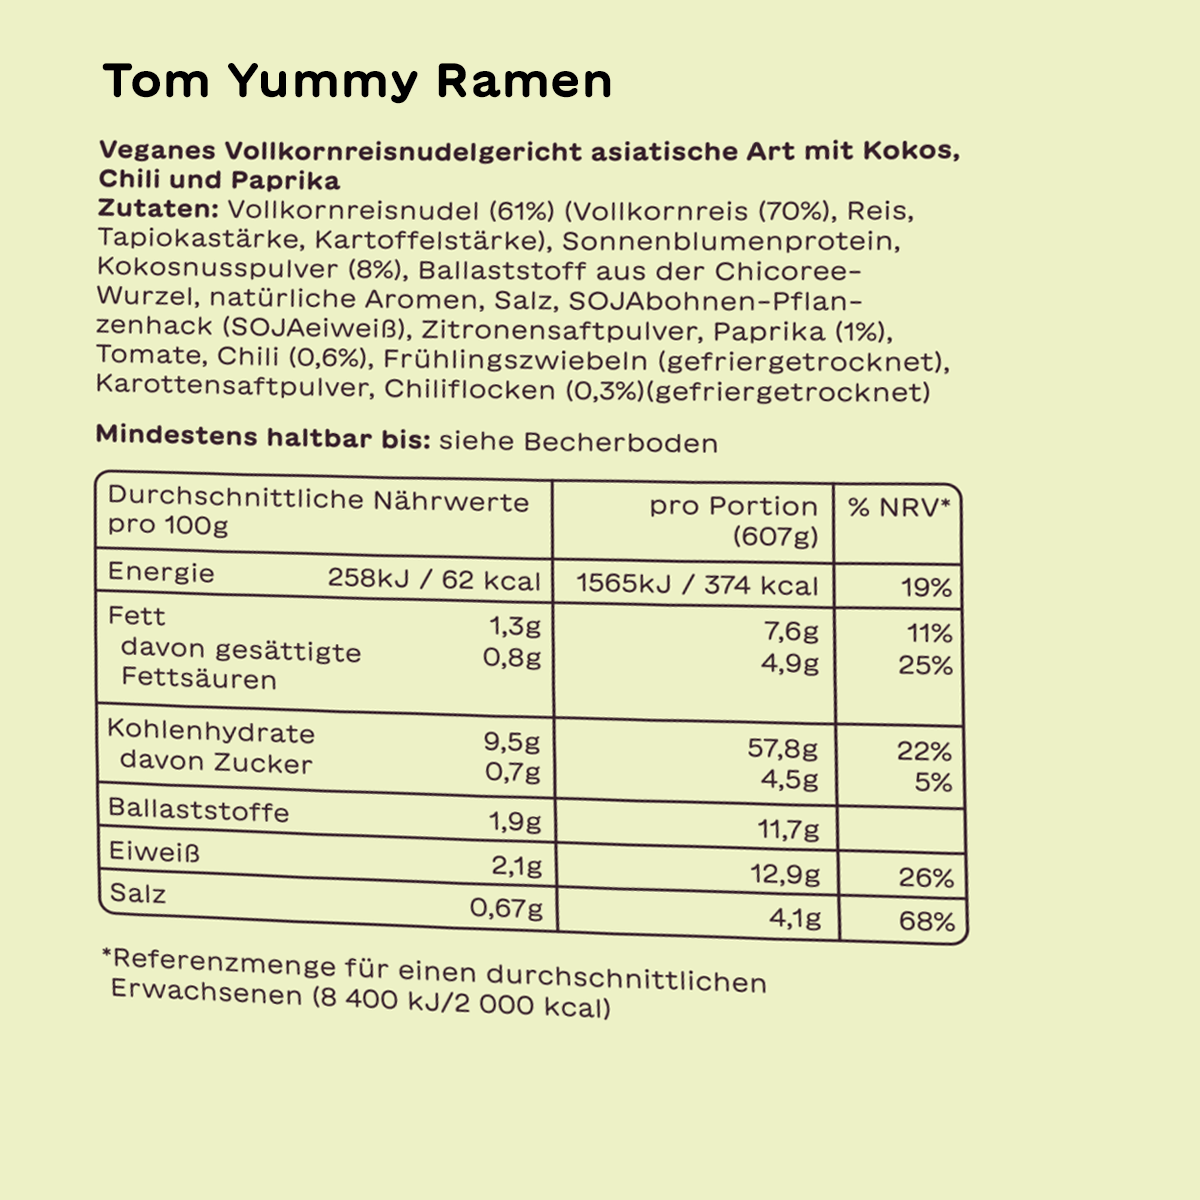 Tom Yummy Ramen